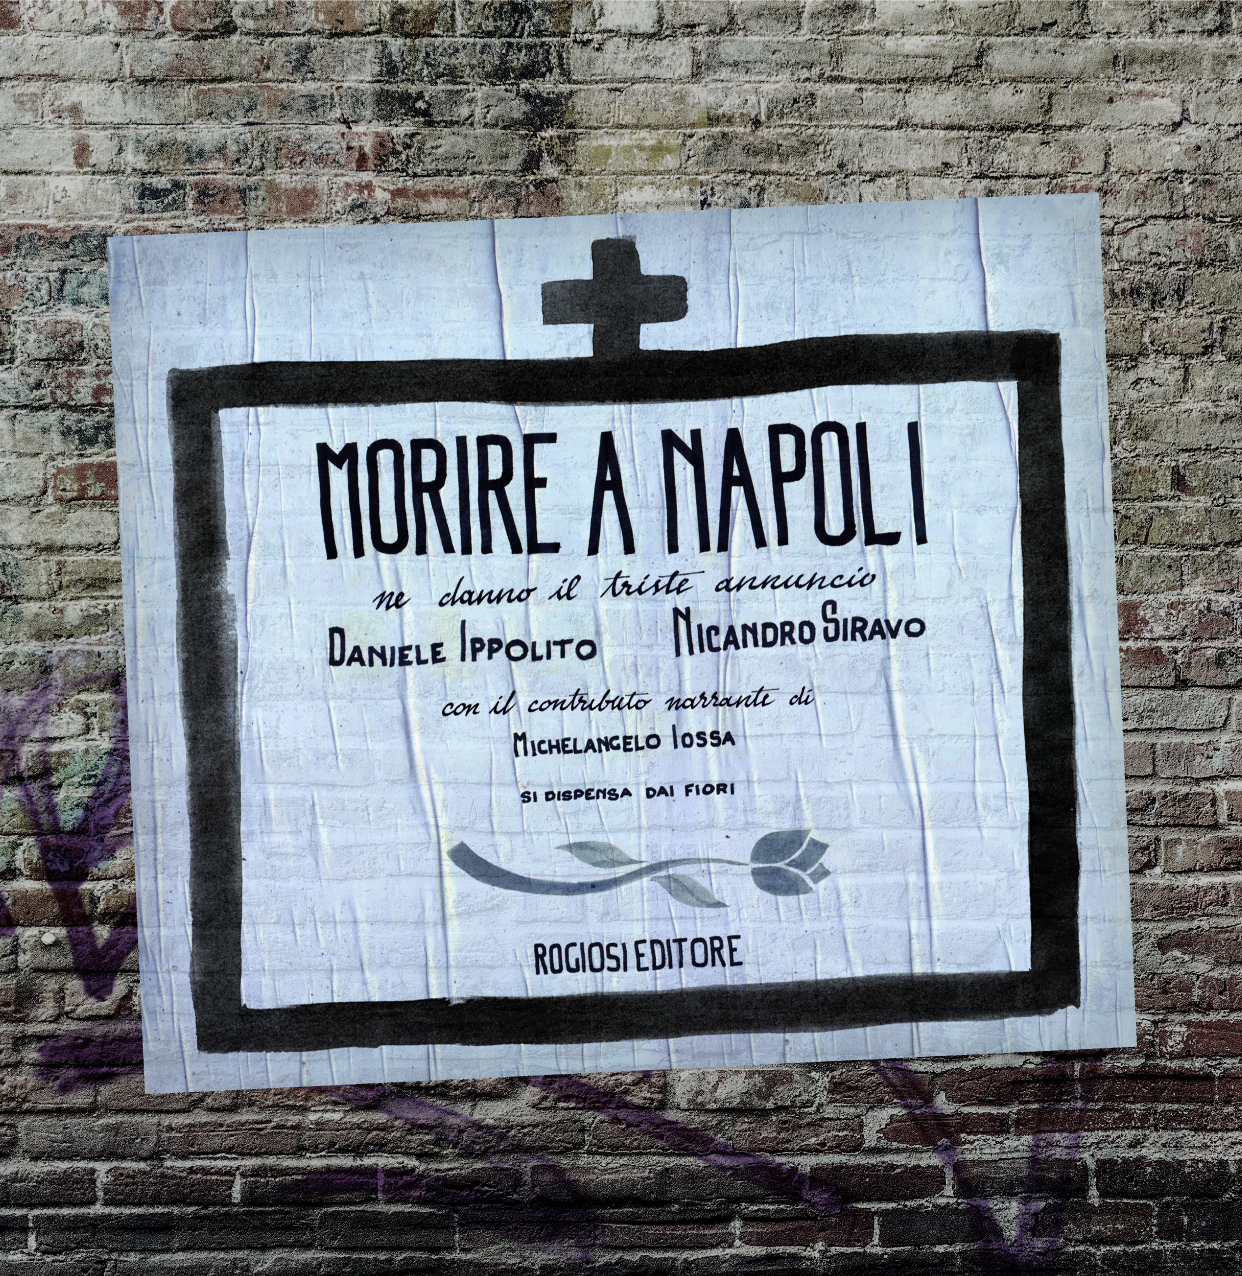  “Morire a Napoli” di Nicandro Siravo e Daniele Ippolito: la presentazione al Gran Caffè Gambrinus Venerdì 22 marzo